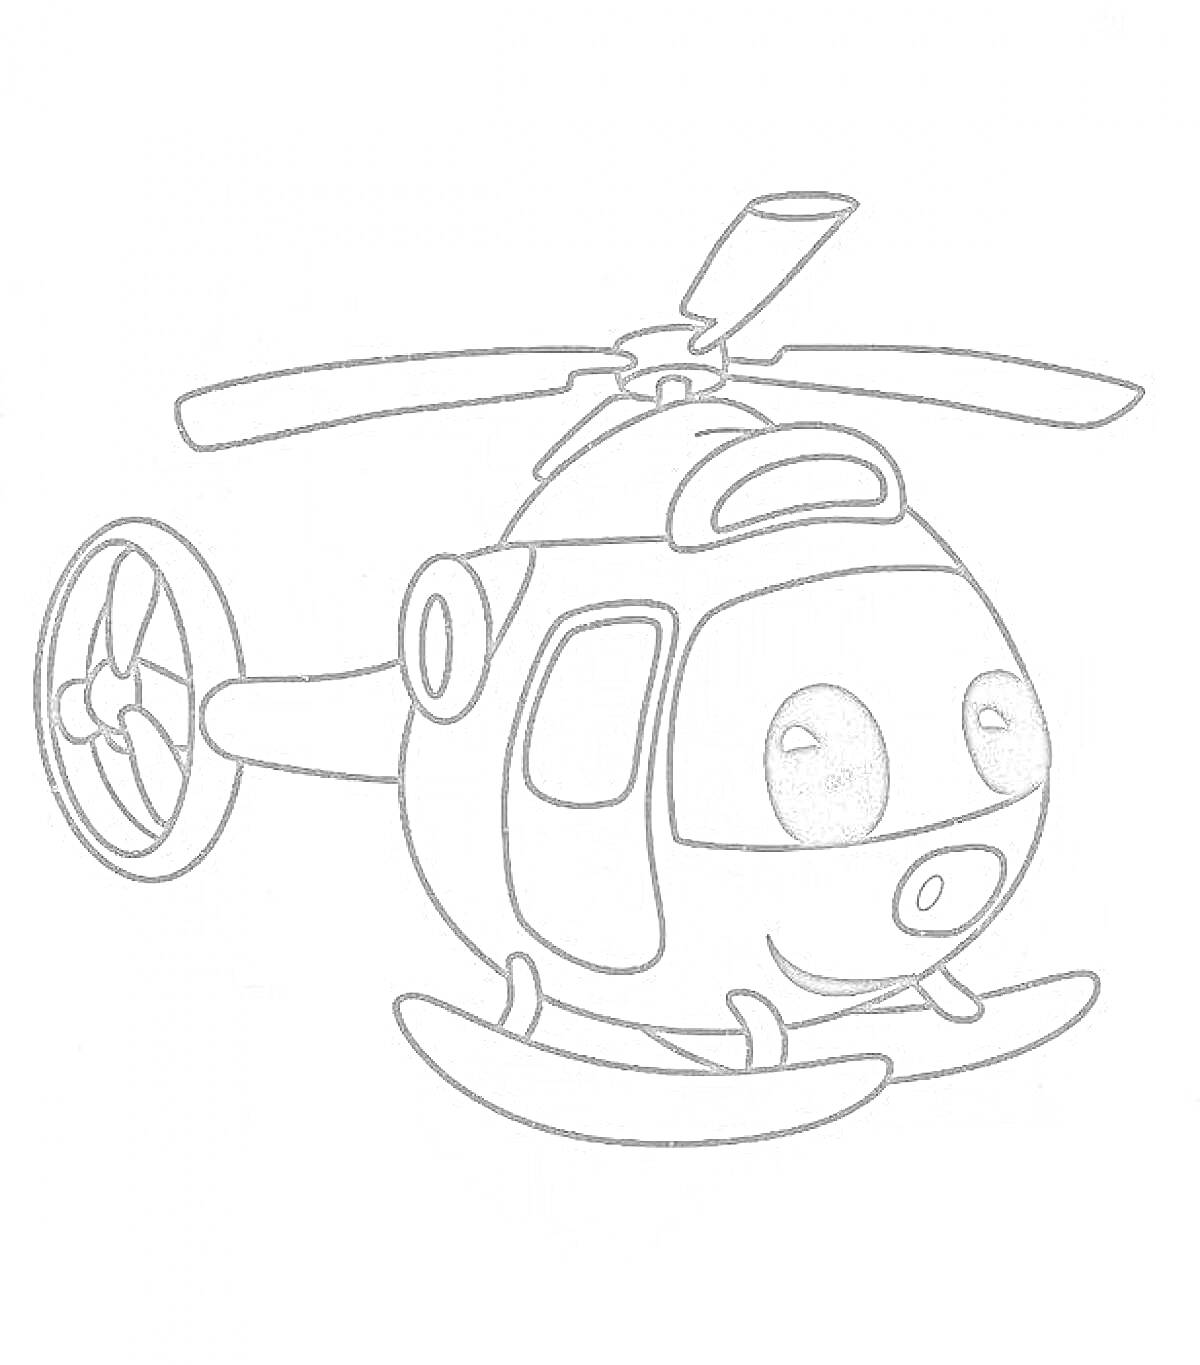 Раскраска Вертолет с улыбкой и большими глазами, с задним винтом и деталями кабины